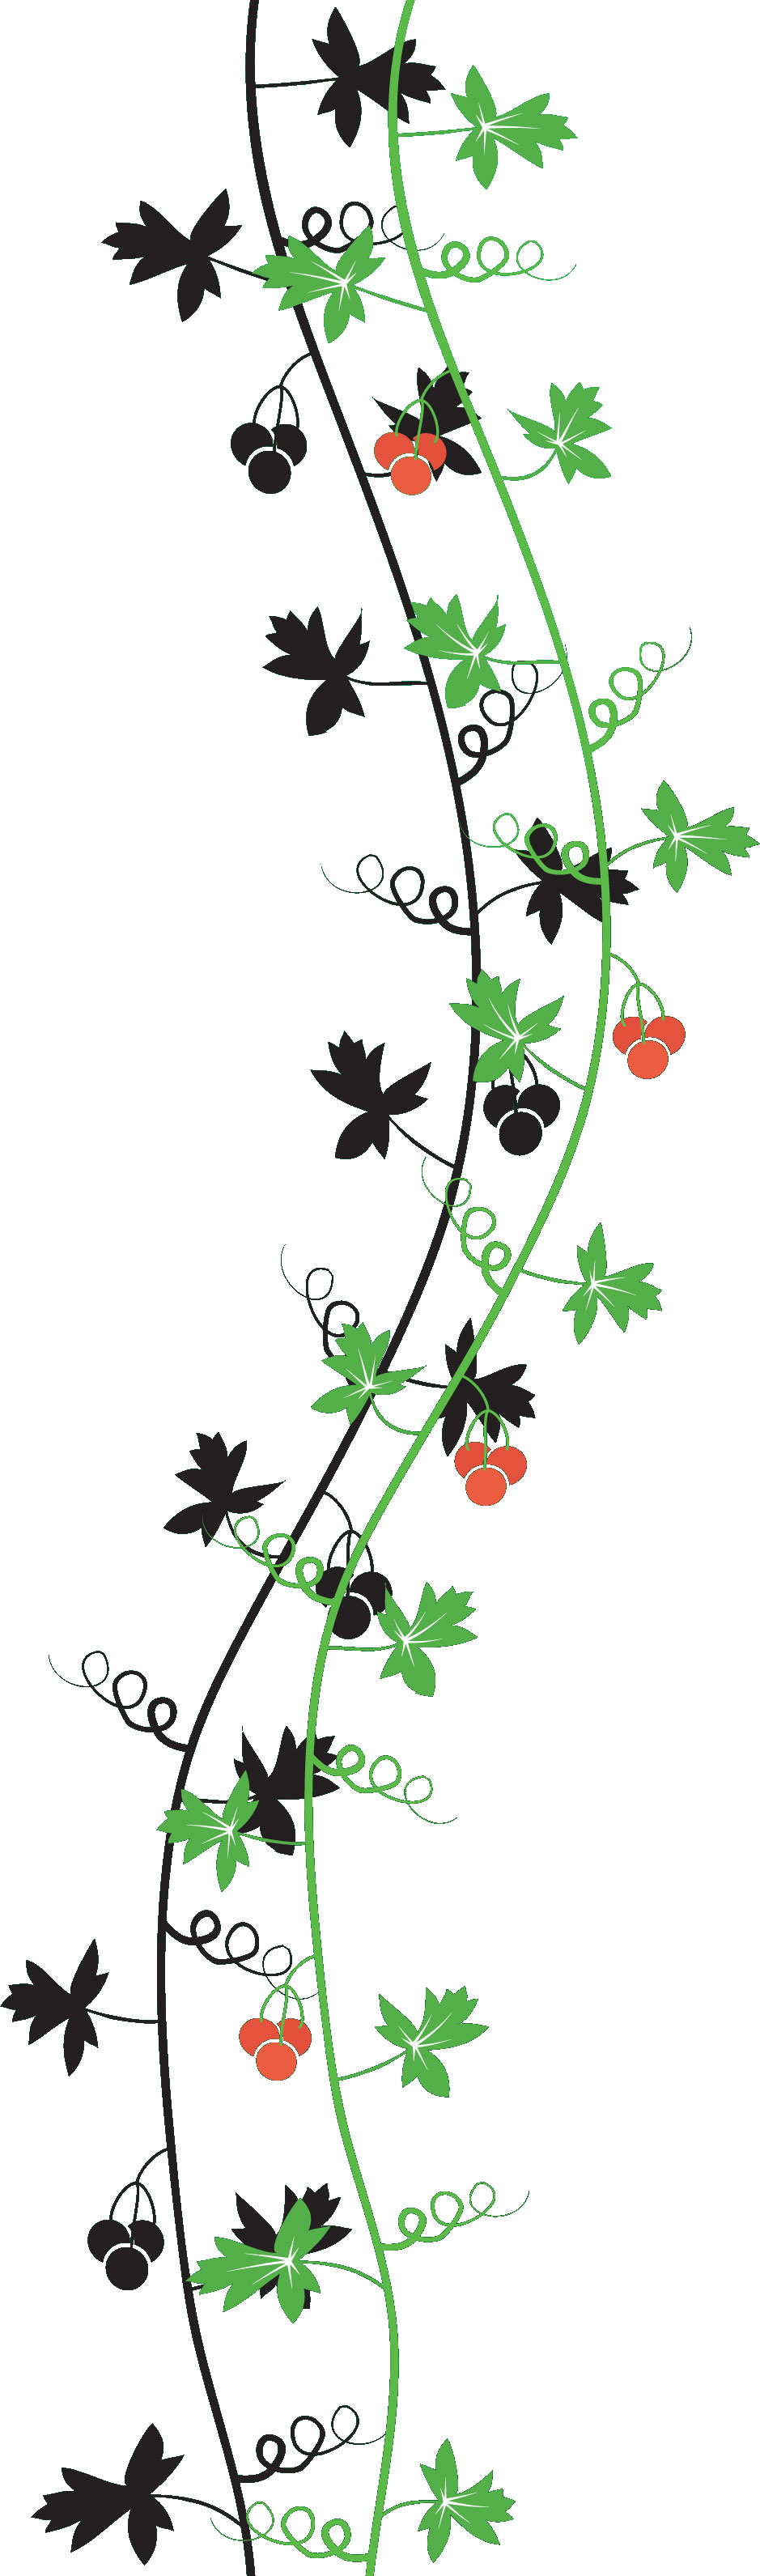 葉っぱや草木のイラスト 画像 フリー素材 No 245 葉 蔦 蔓 赤い実